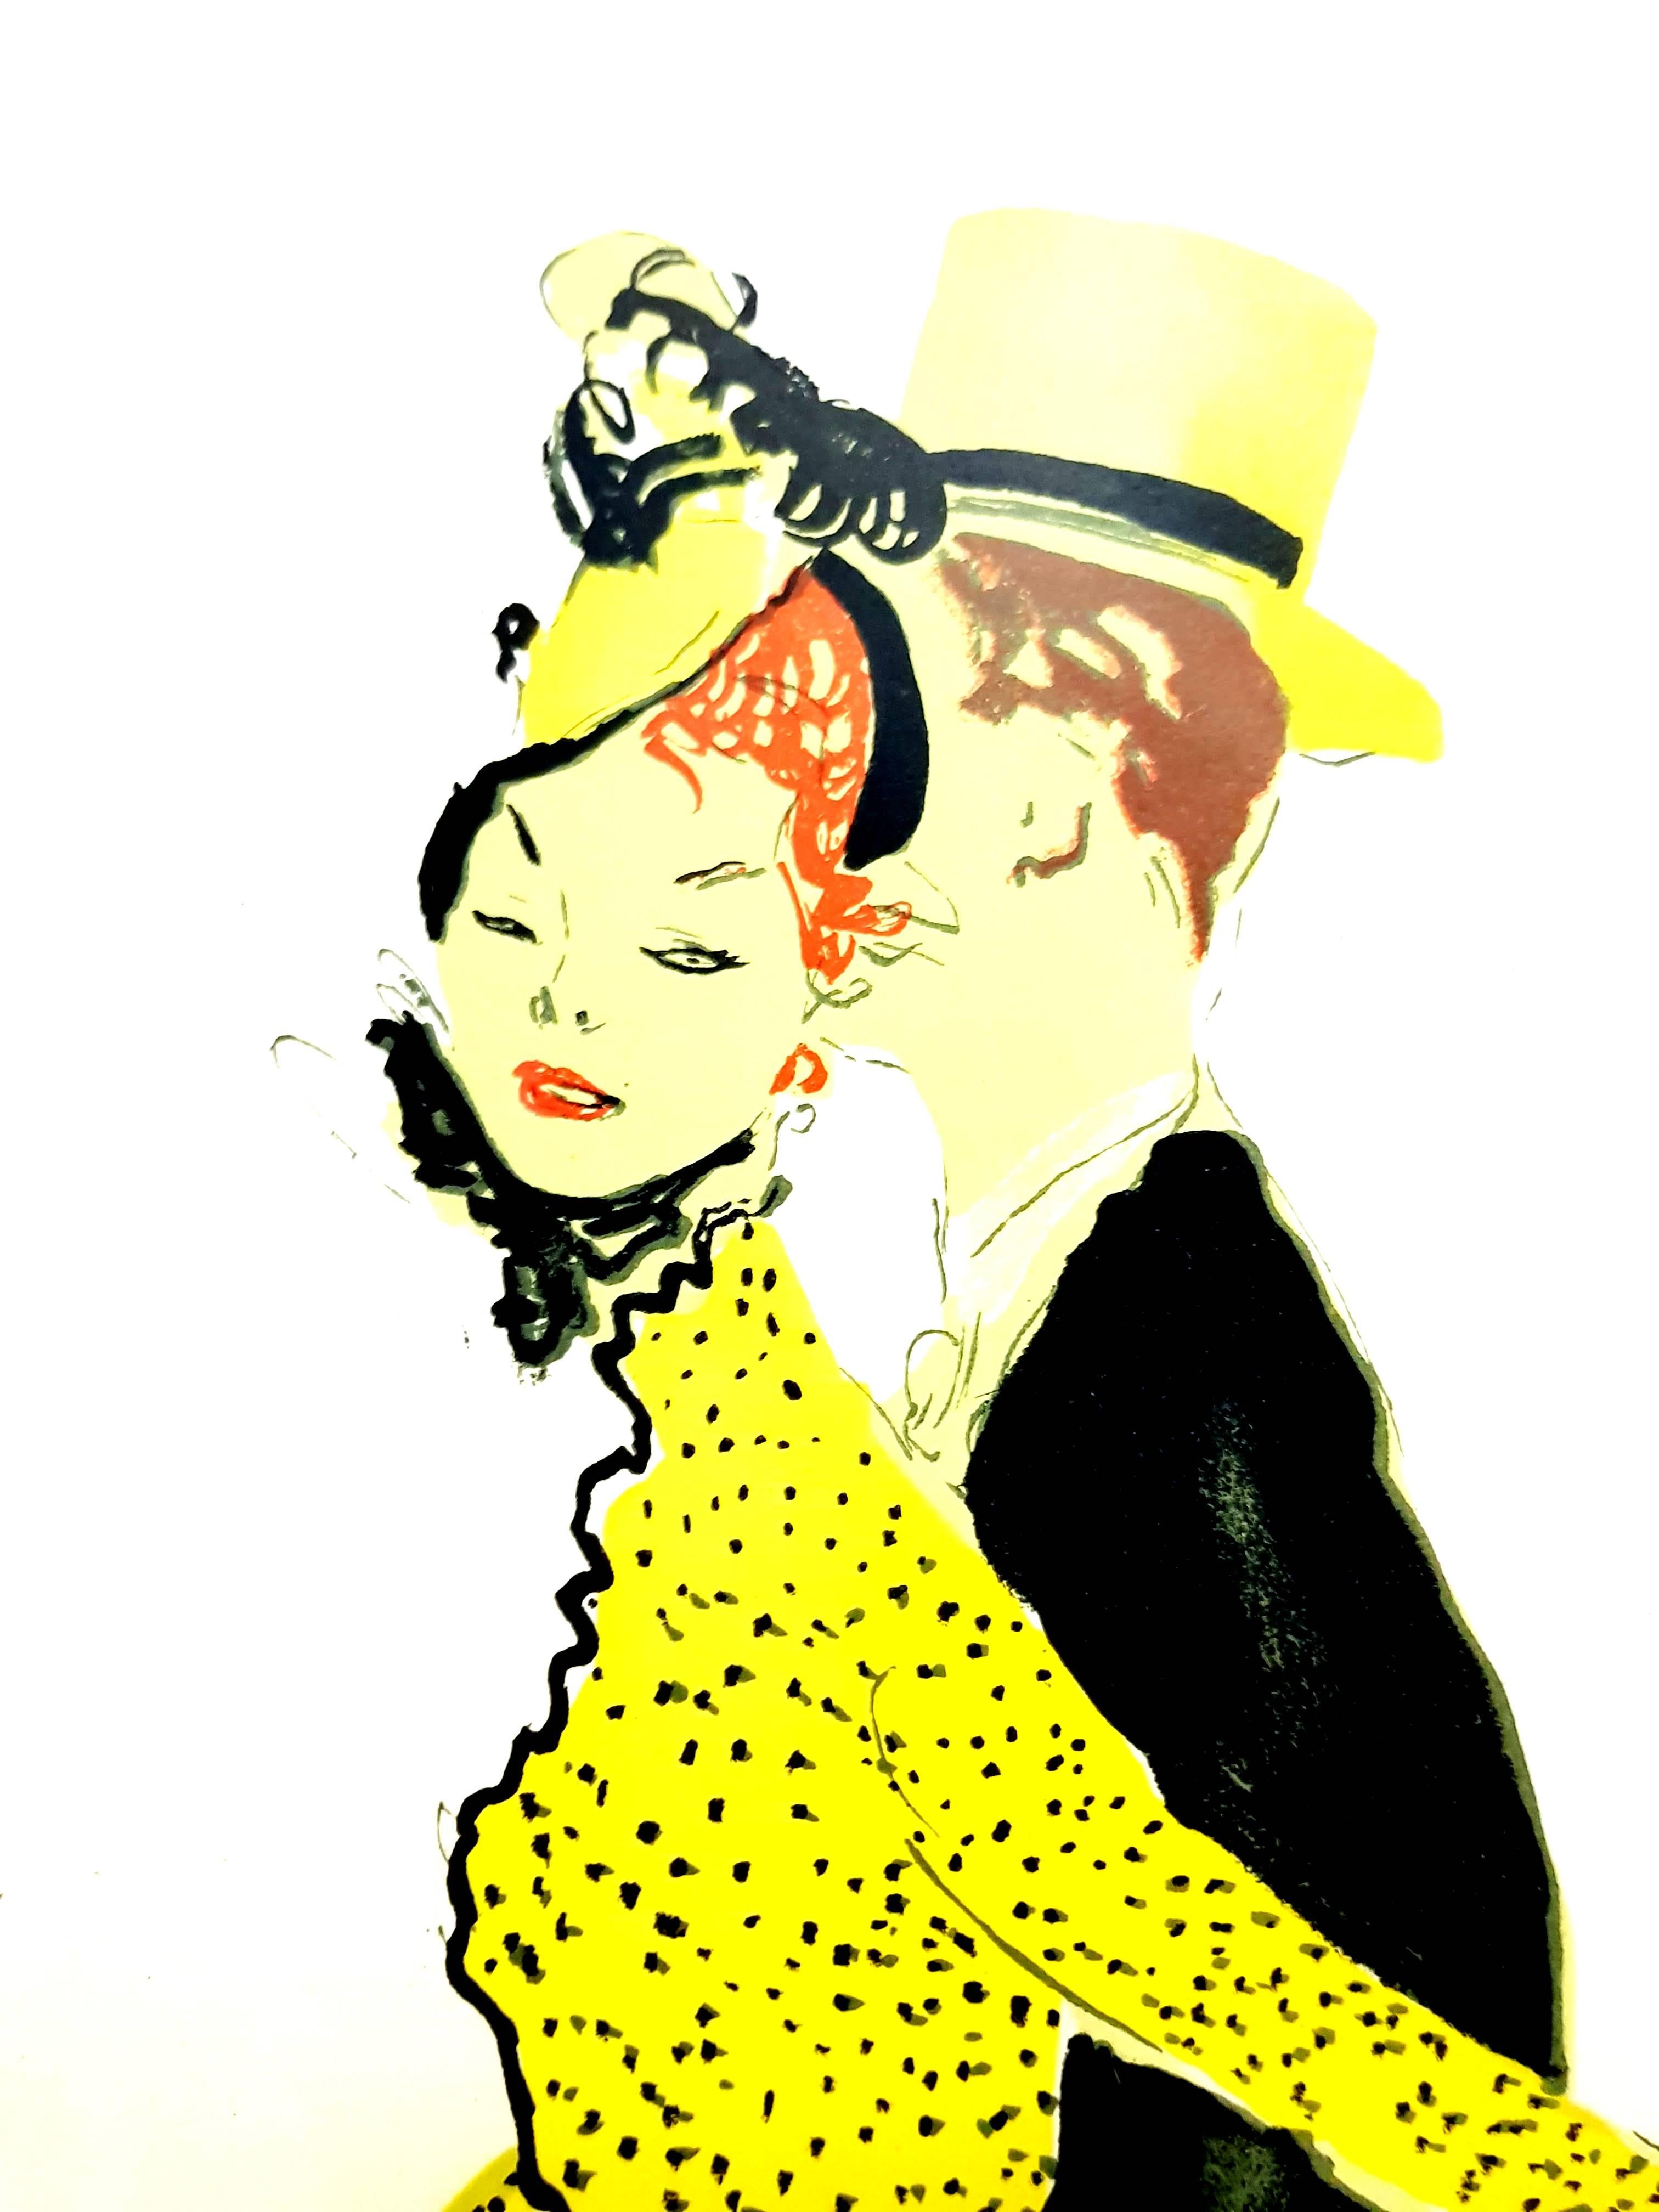 Lithographie originale de Jean-Gabriel Domergue
Titre : Couple Elegant
Signé 
Dimensions : 40 x 31 cm
1956
Edition de 197
Cette œuvre d'art fait partie du célèbre portfolio 